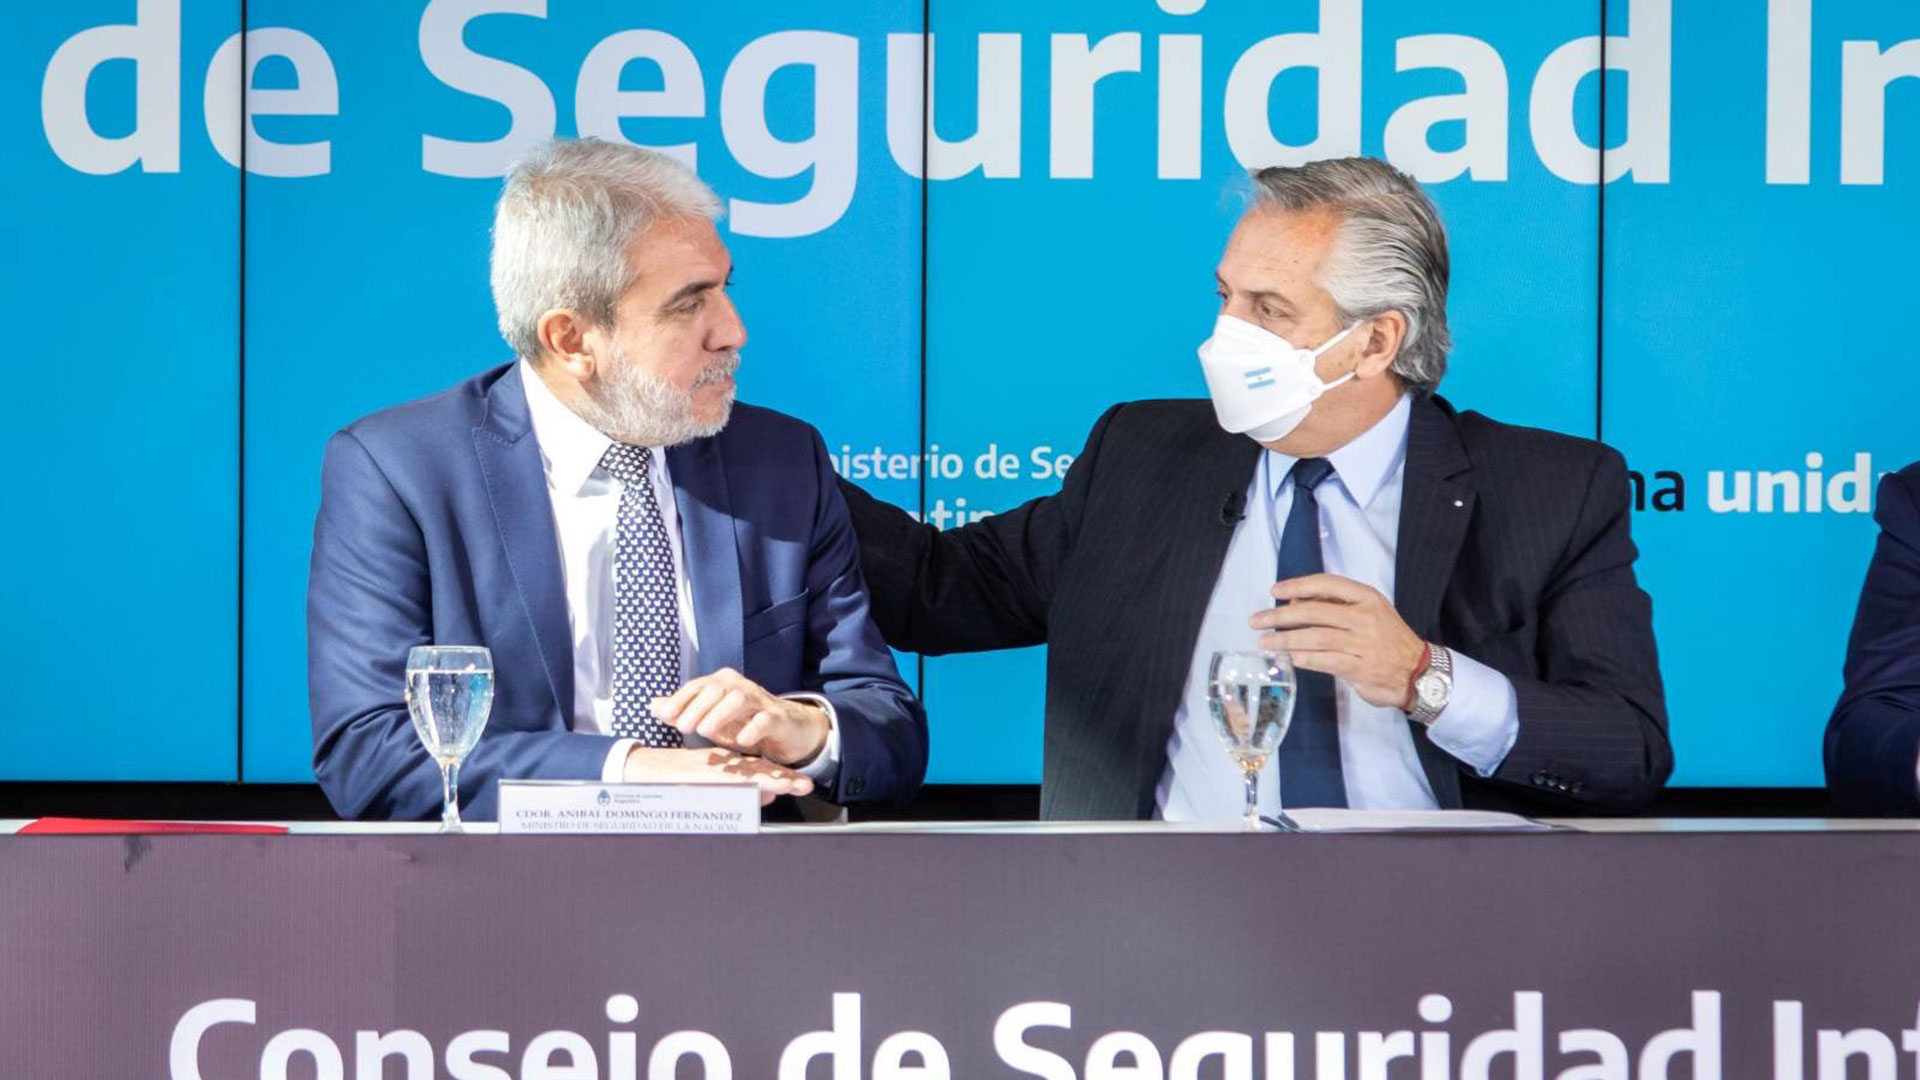 El ministro de Seguridad, Aníbal Fernández, defendió que el Presidente eche funcionarios que se opongan a las medidas tarifarias